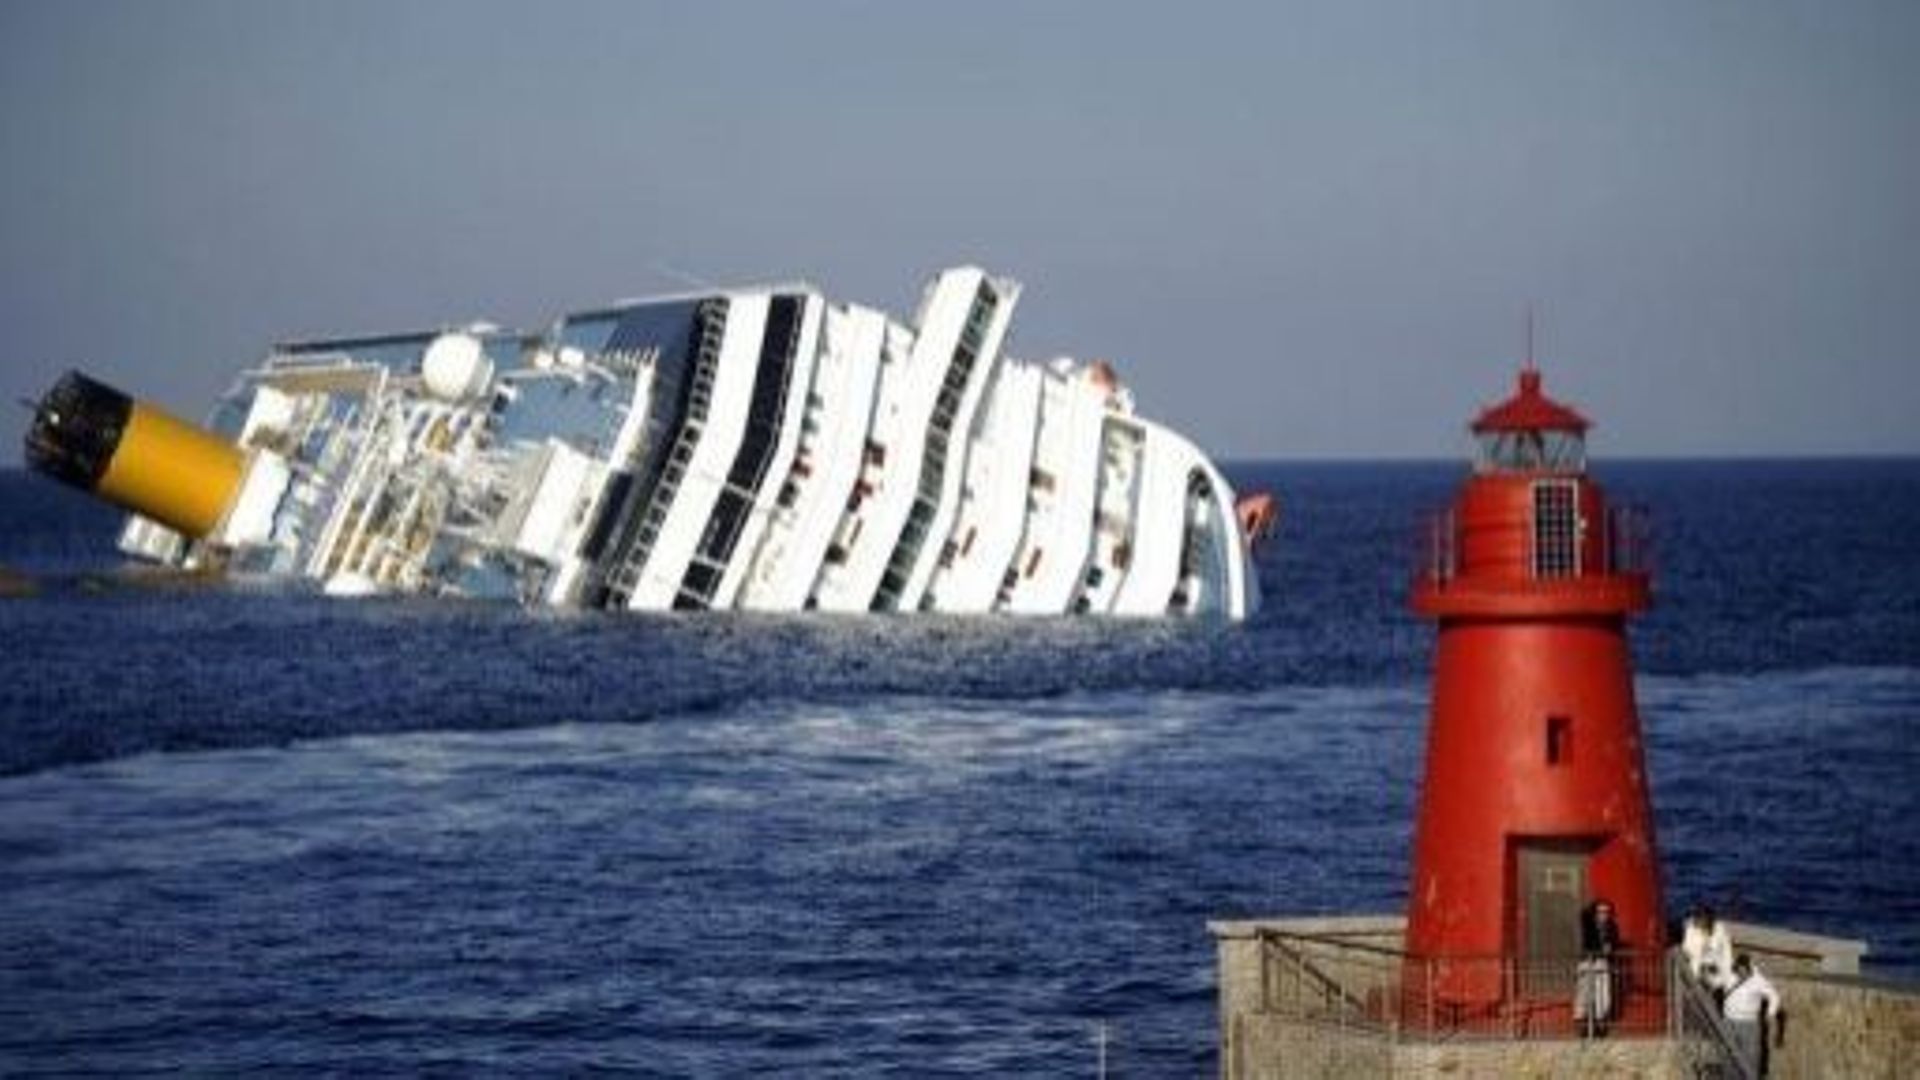 Le Costa Concordia, deux jours après son naufrage qui a fait 32 morts le 12 janvier 2012 au large de l'Italie